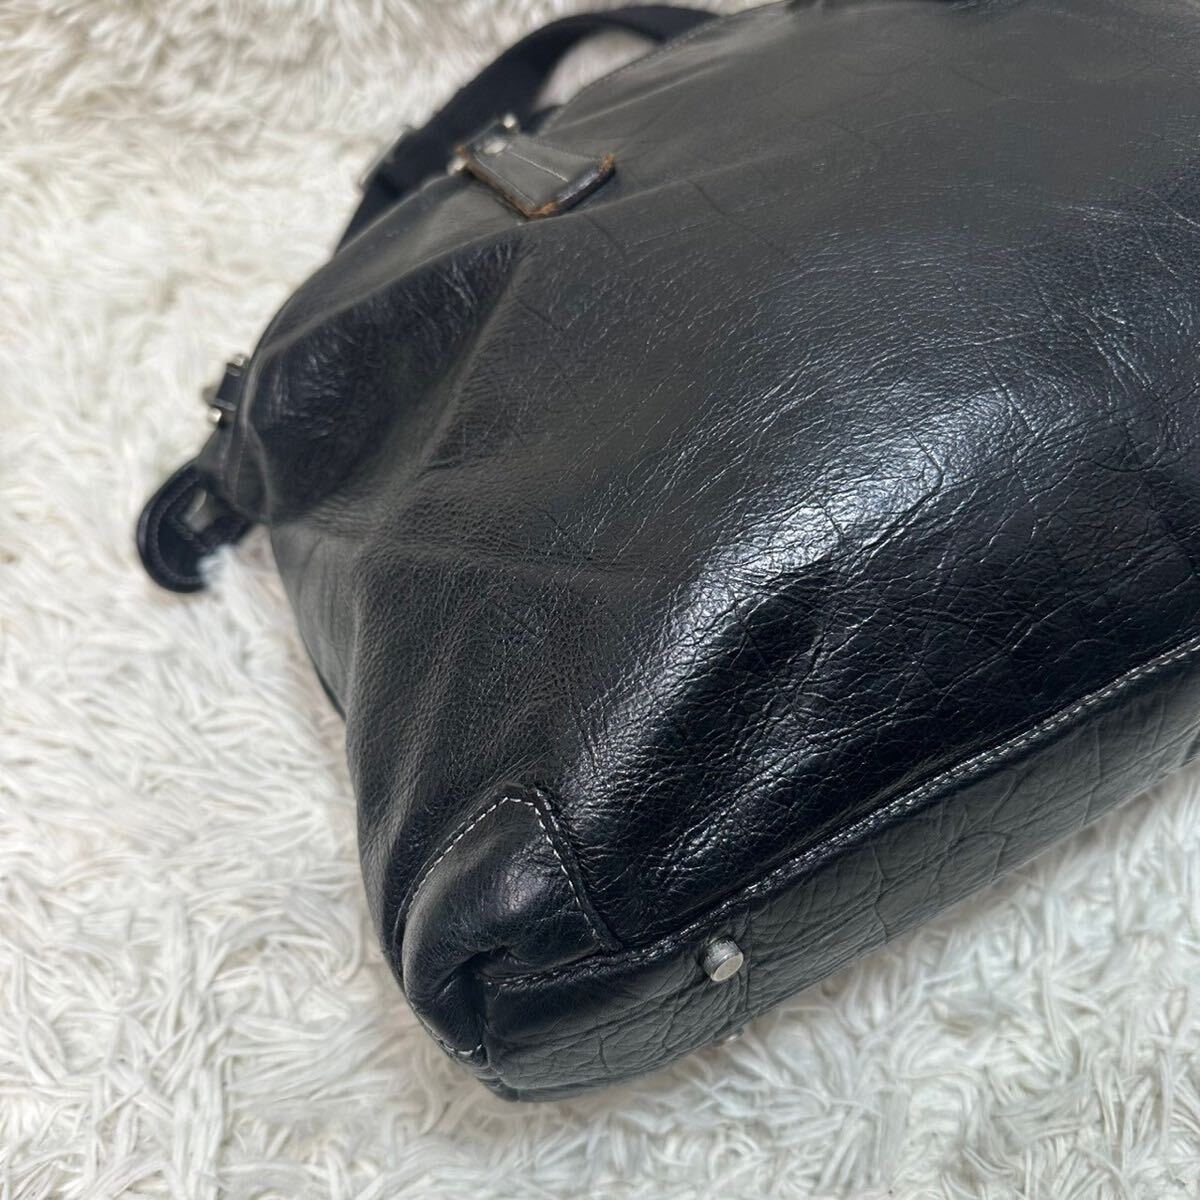 ani есть [ популярный дизайн ] aniary большая сумка портфель сумка на плечо 2way кожа черный ko type вдавлено . плечо .. ходить на работу мужской 